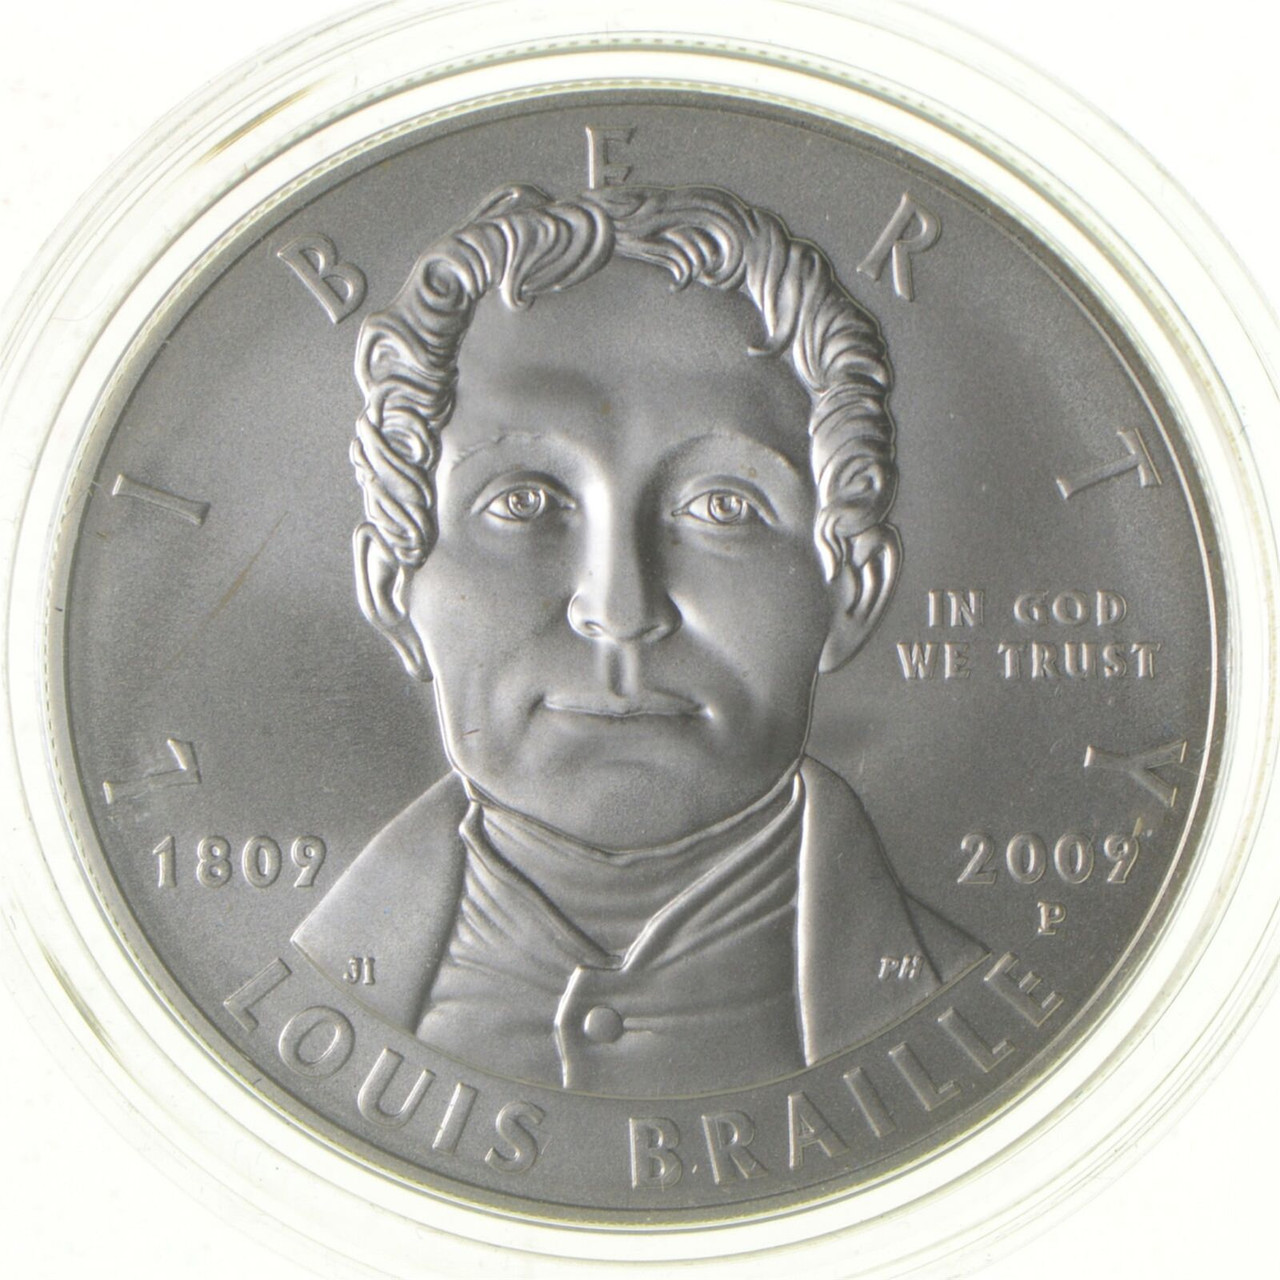 2009 P Louis Braille - UNC - US Commemorative 90% Silver Dollar